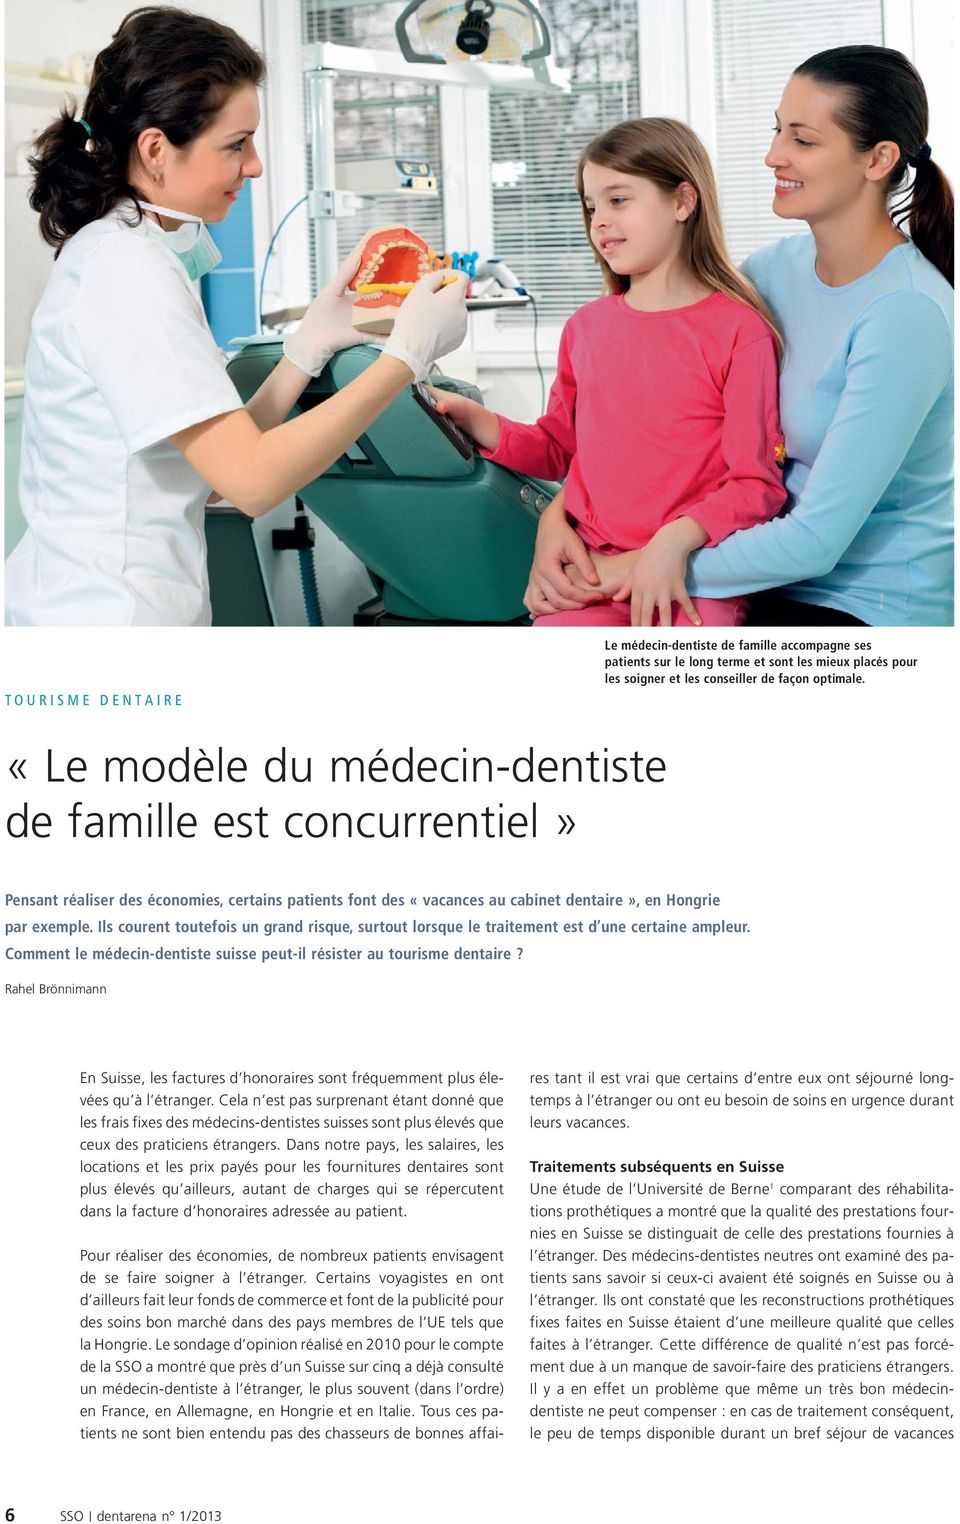 Ils courent toutefois un grand risque, surtout lorsque le traitement est d une certaine ampleur. Comment le médecin-dentiste suisse peut-il résister au tourisme dentaire?